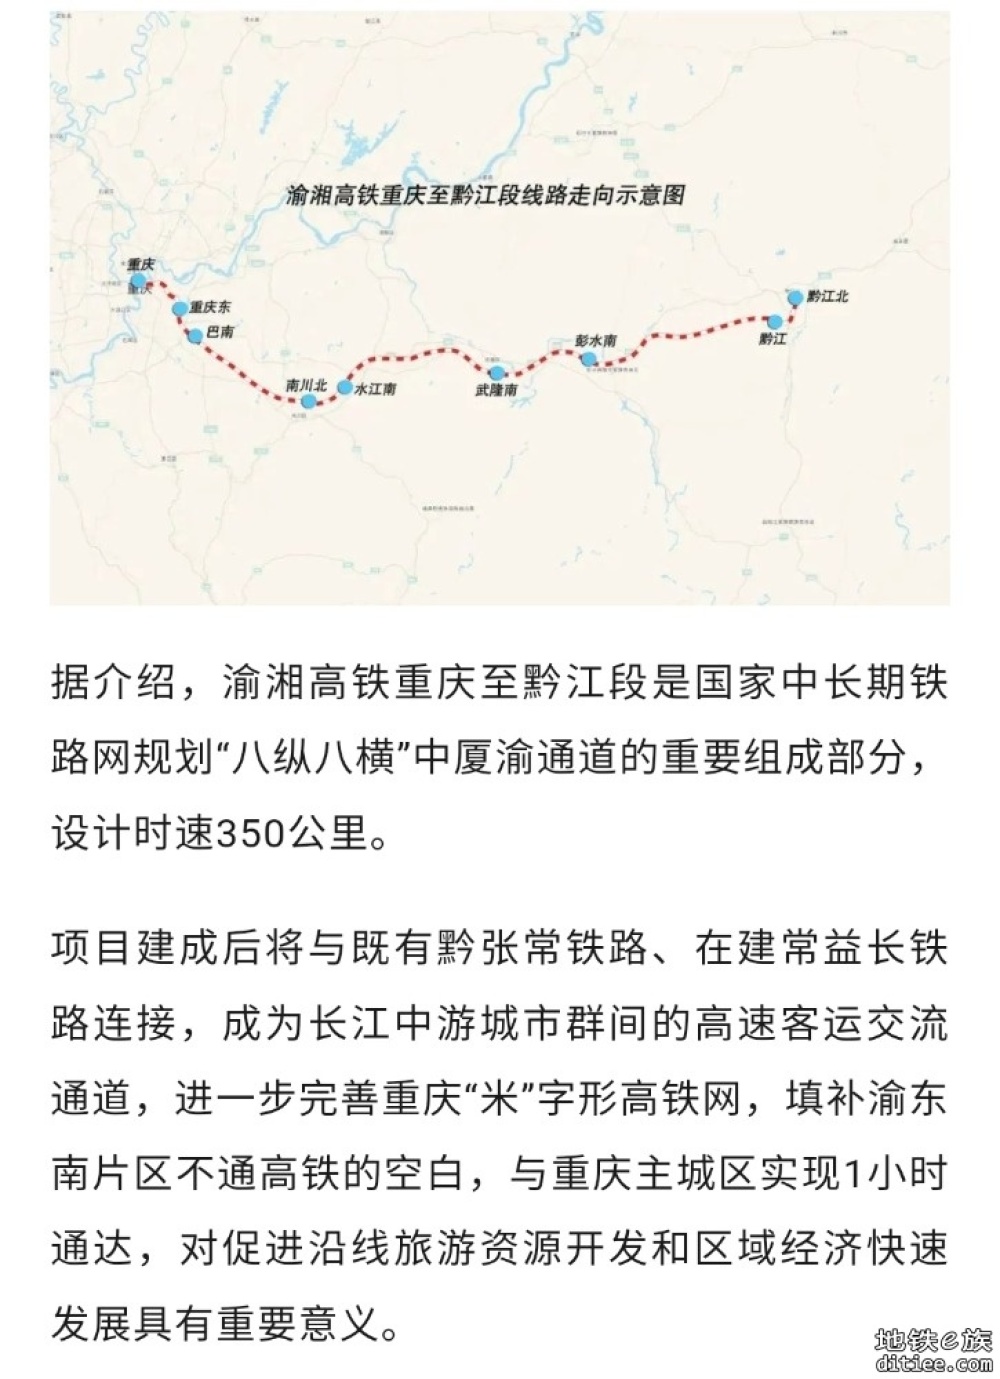 渝湘高铁重庆至黔江段建设再提速